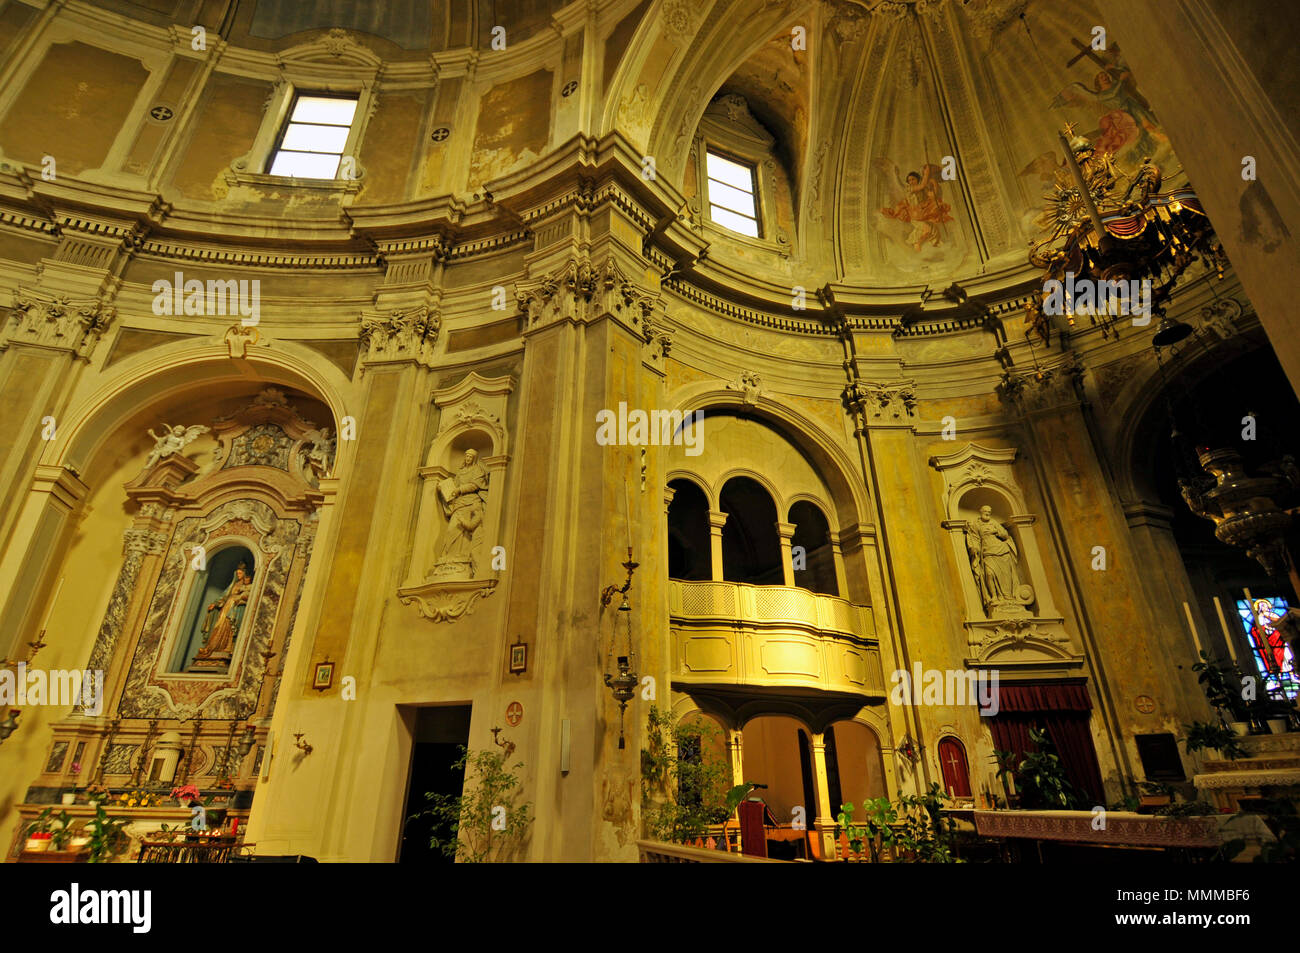 Innenansicht der Kirche von St. Anthony Märtyrer, Piazza Guglielmo Marconi, Ficarolo, Rovigo, Italien Stockfoto